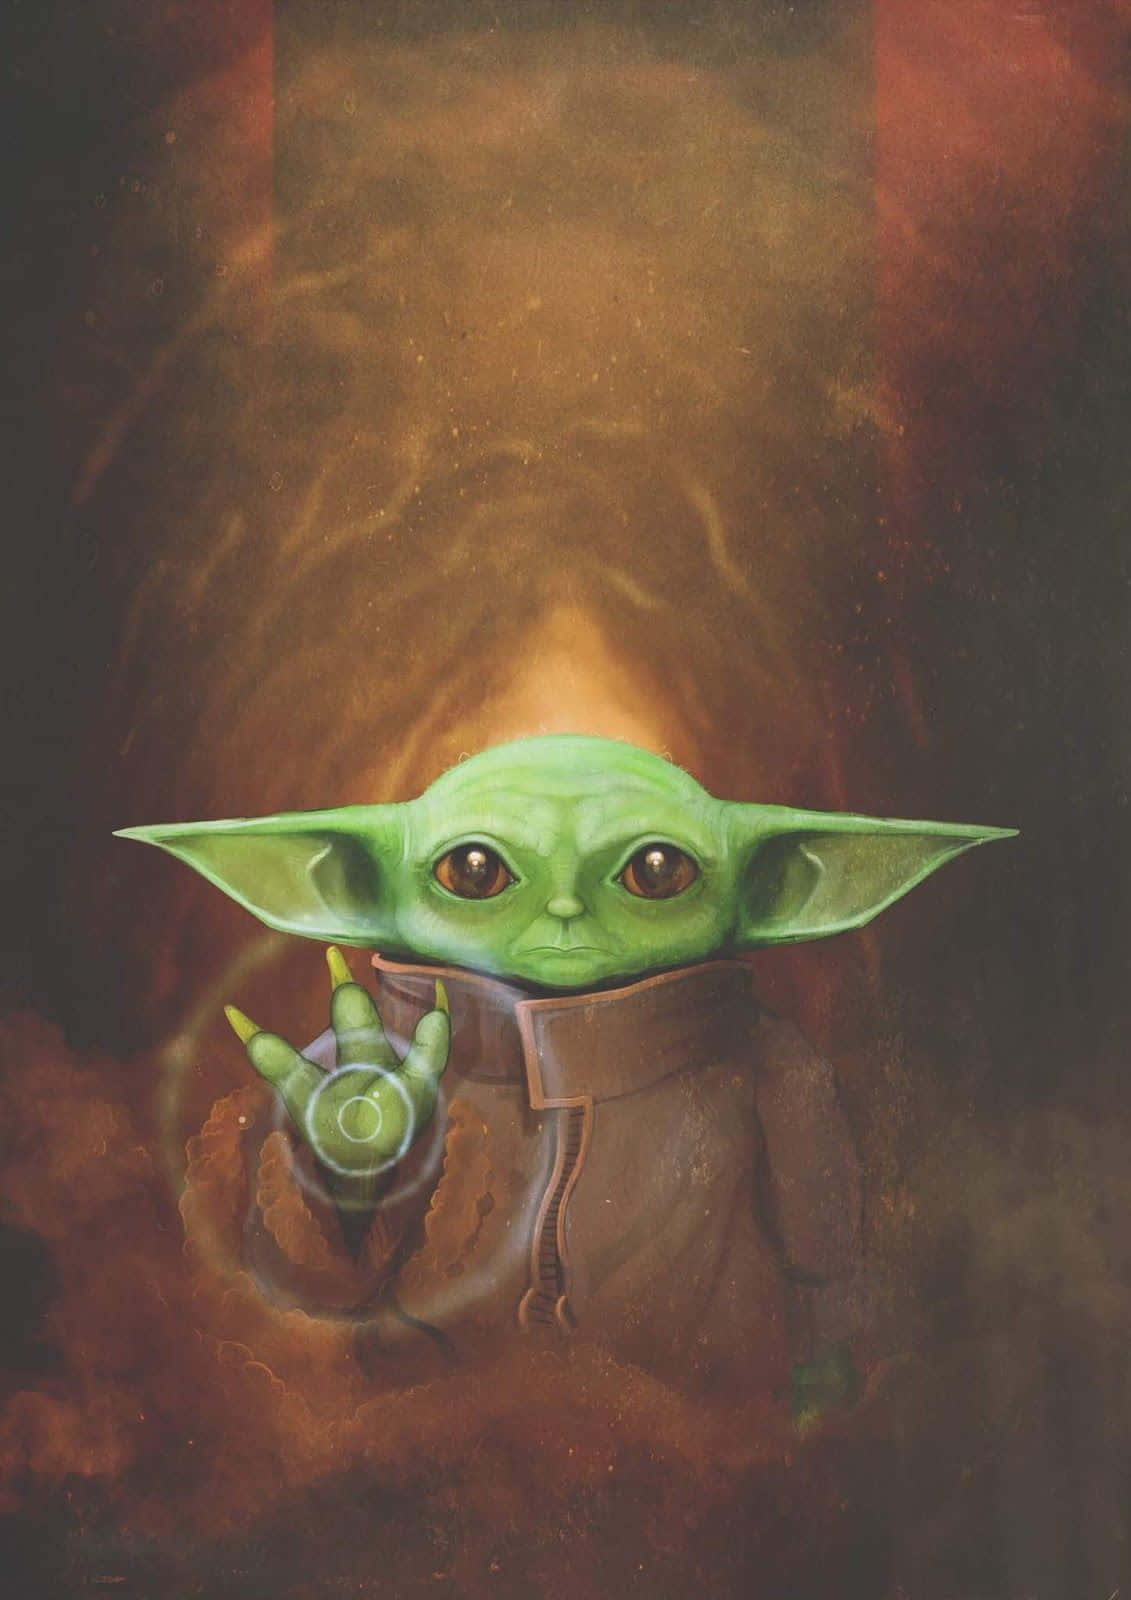 Bedårandebaby Yoda Med Sina Stora Svarta Ögon.